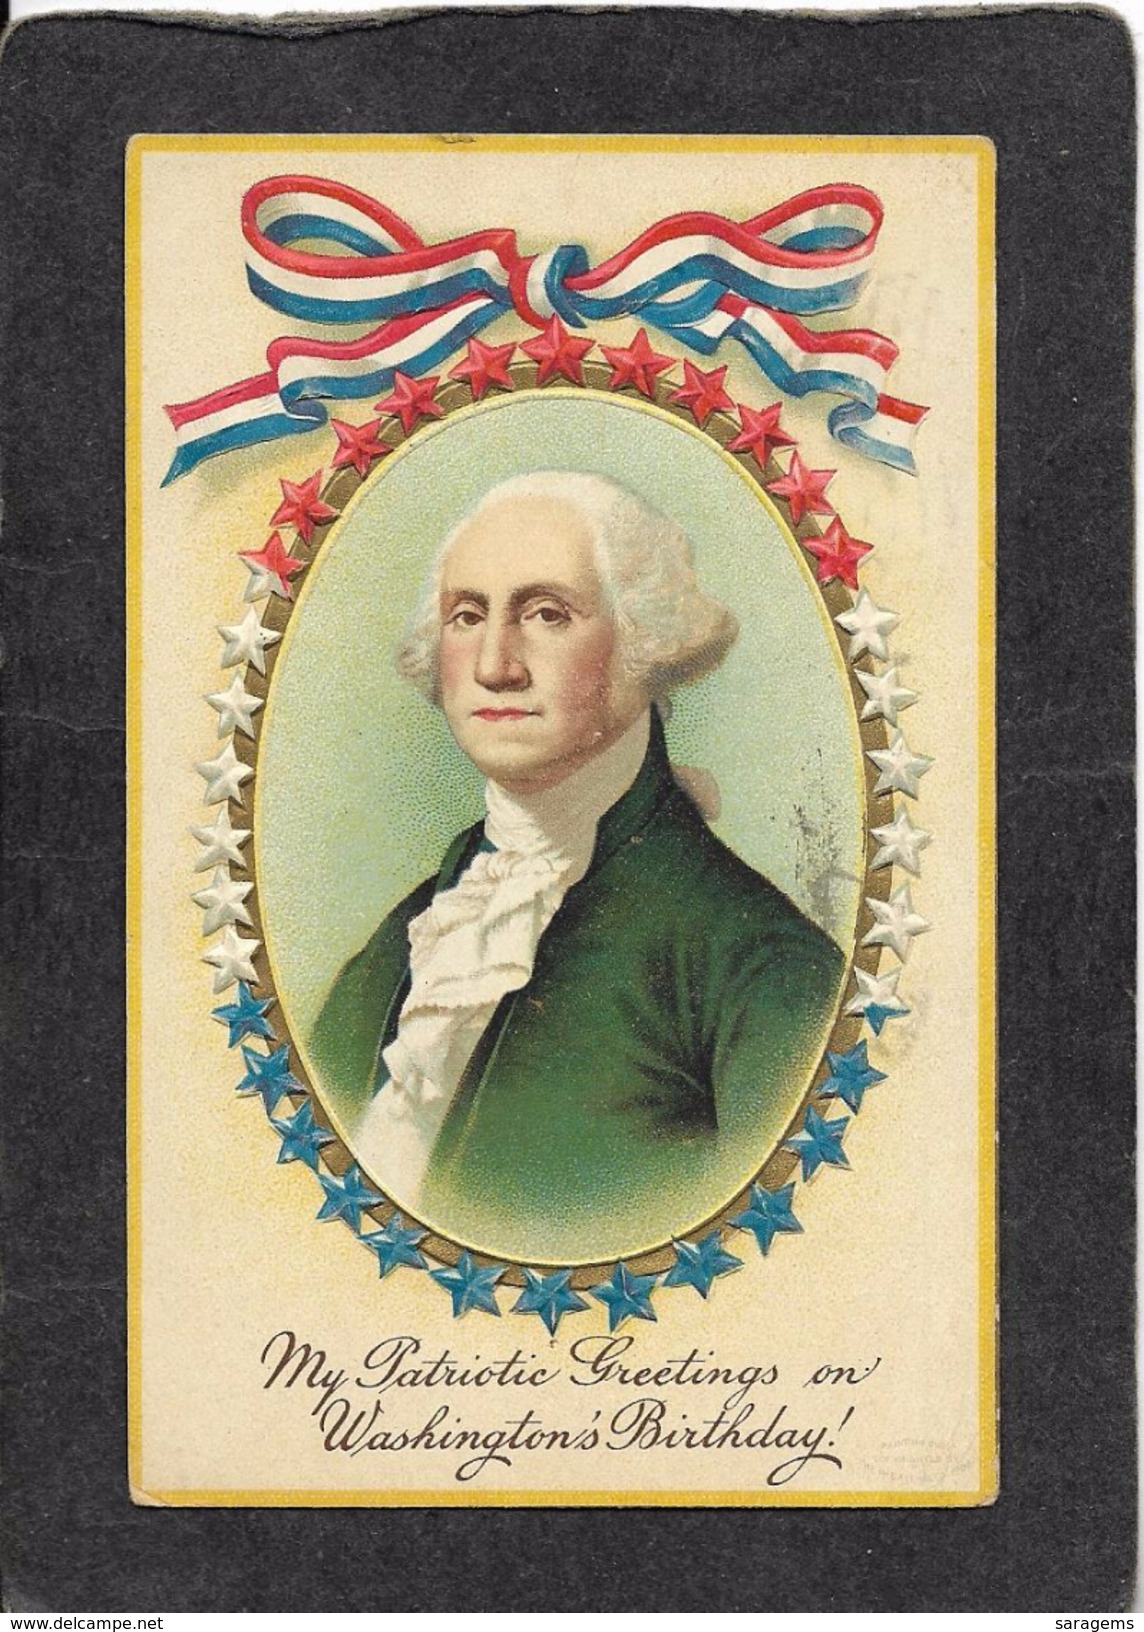 George Washington's Portrait ,Garre 1914 - Ellen Clapsaddle Antique Postcard - Clapsaddle